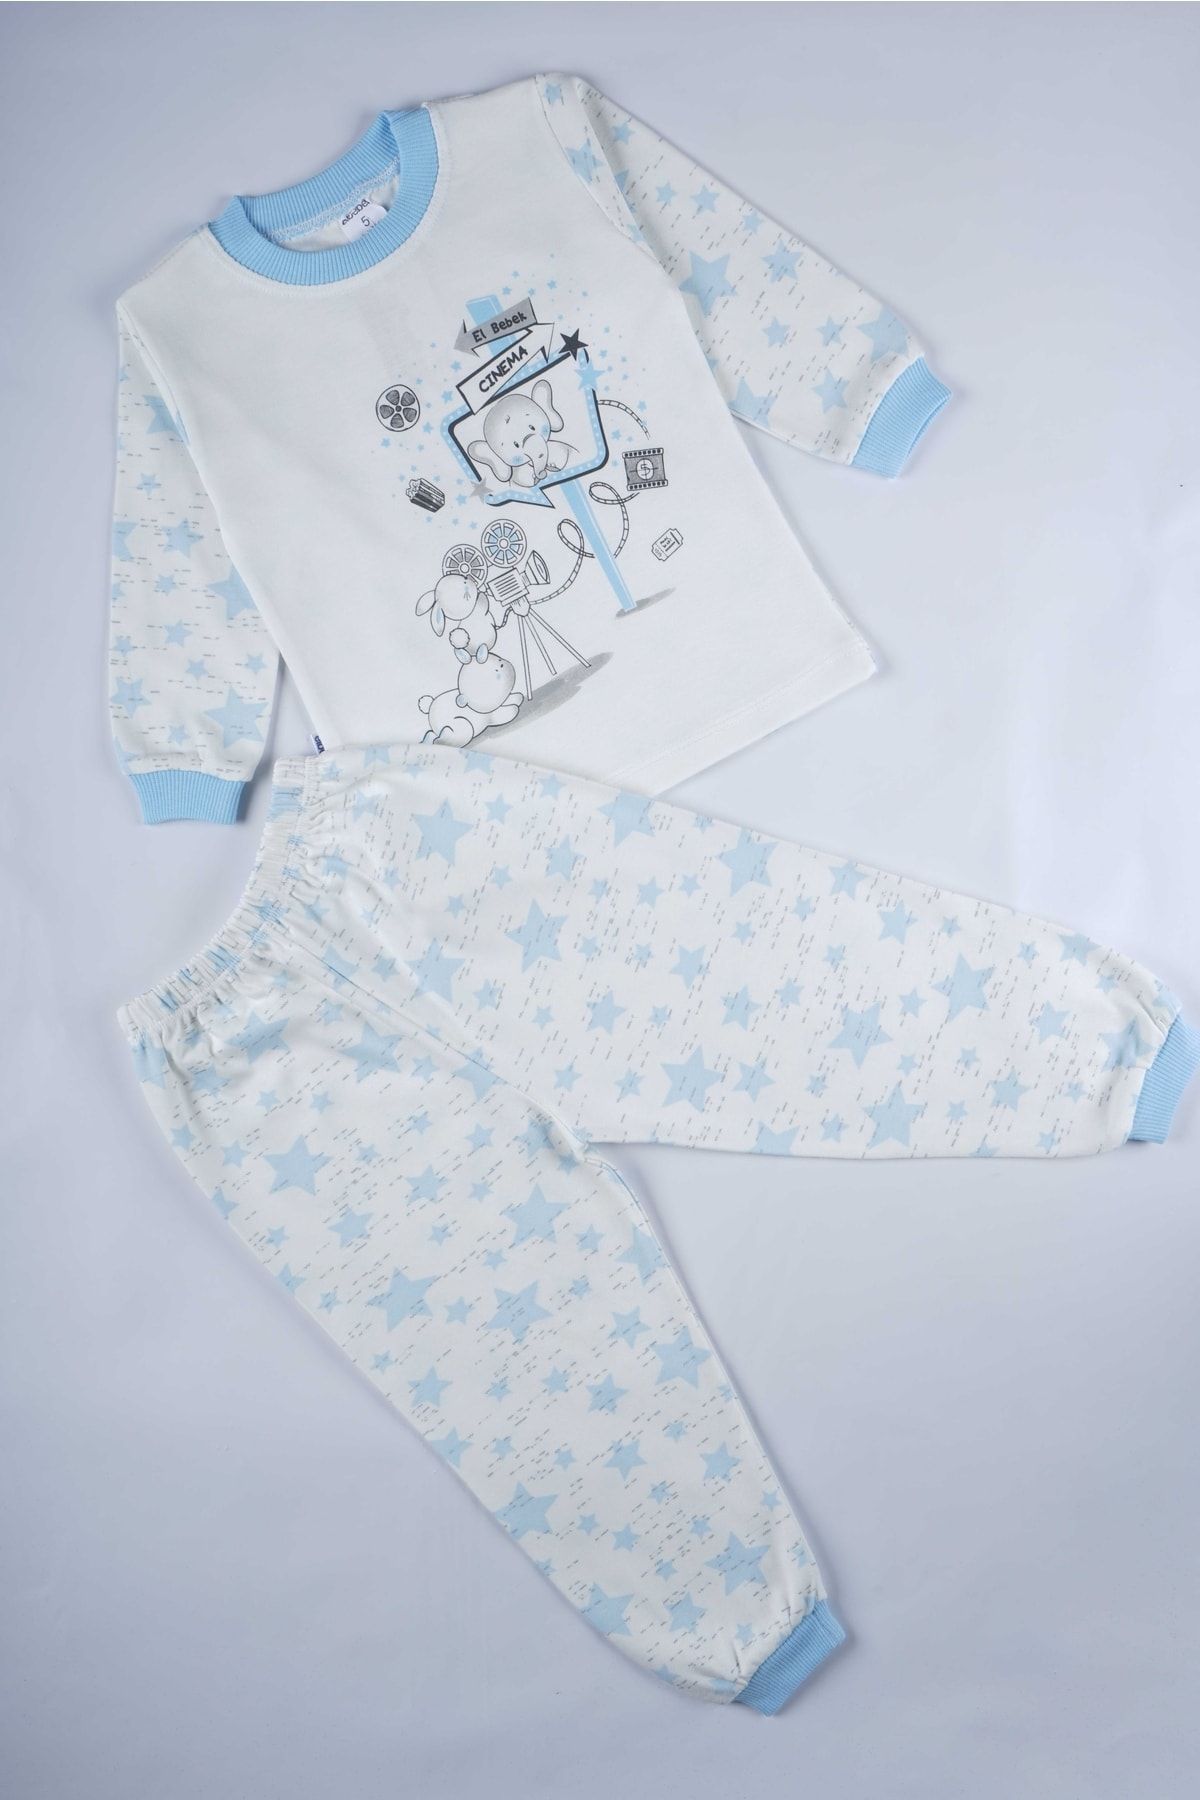 MİNİKO KİDS Yeni Sezon Pamuk Çocuk Desenli Pijama Takımı